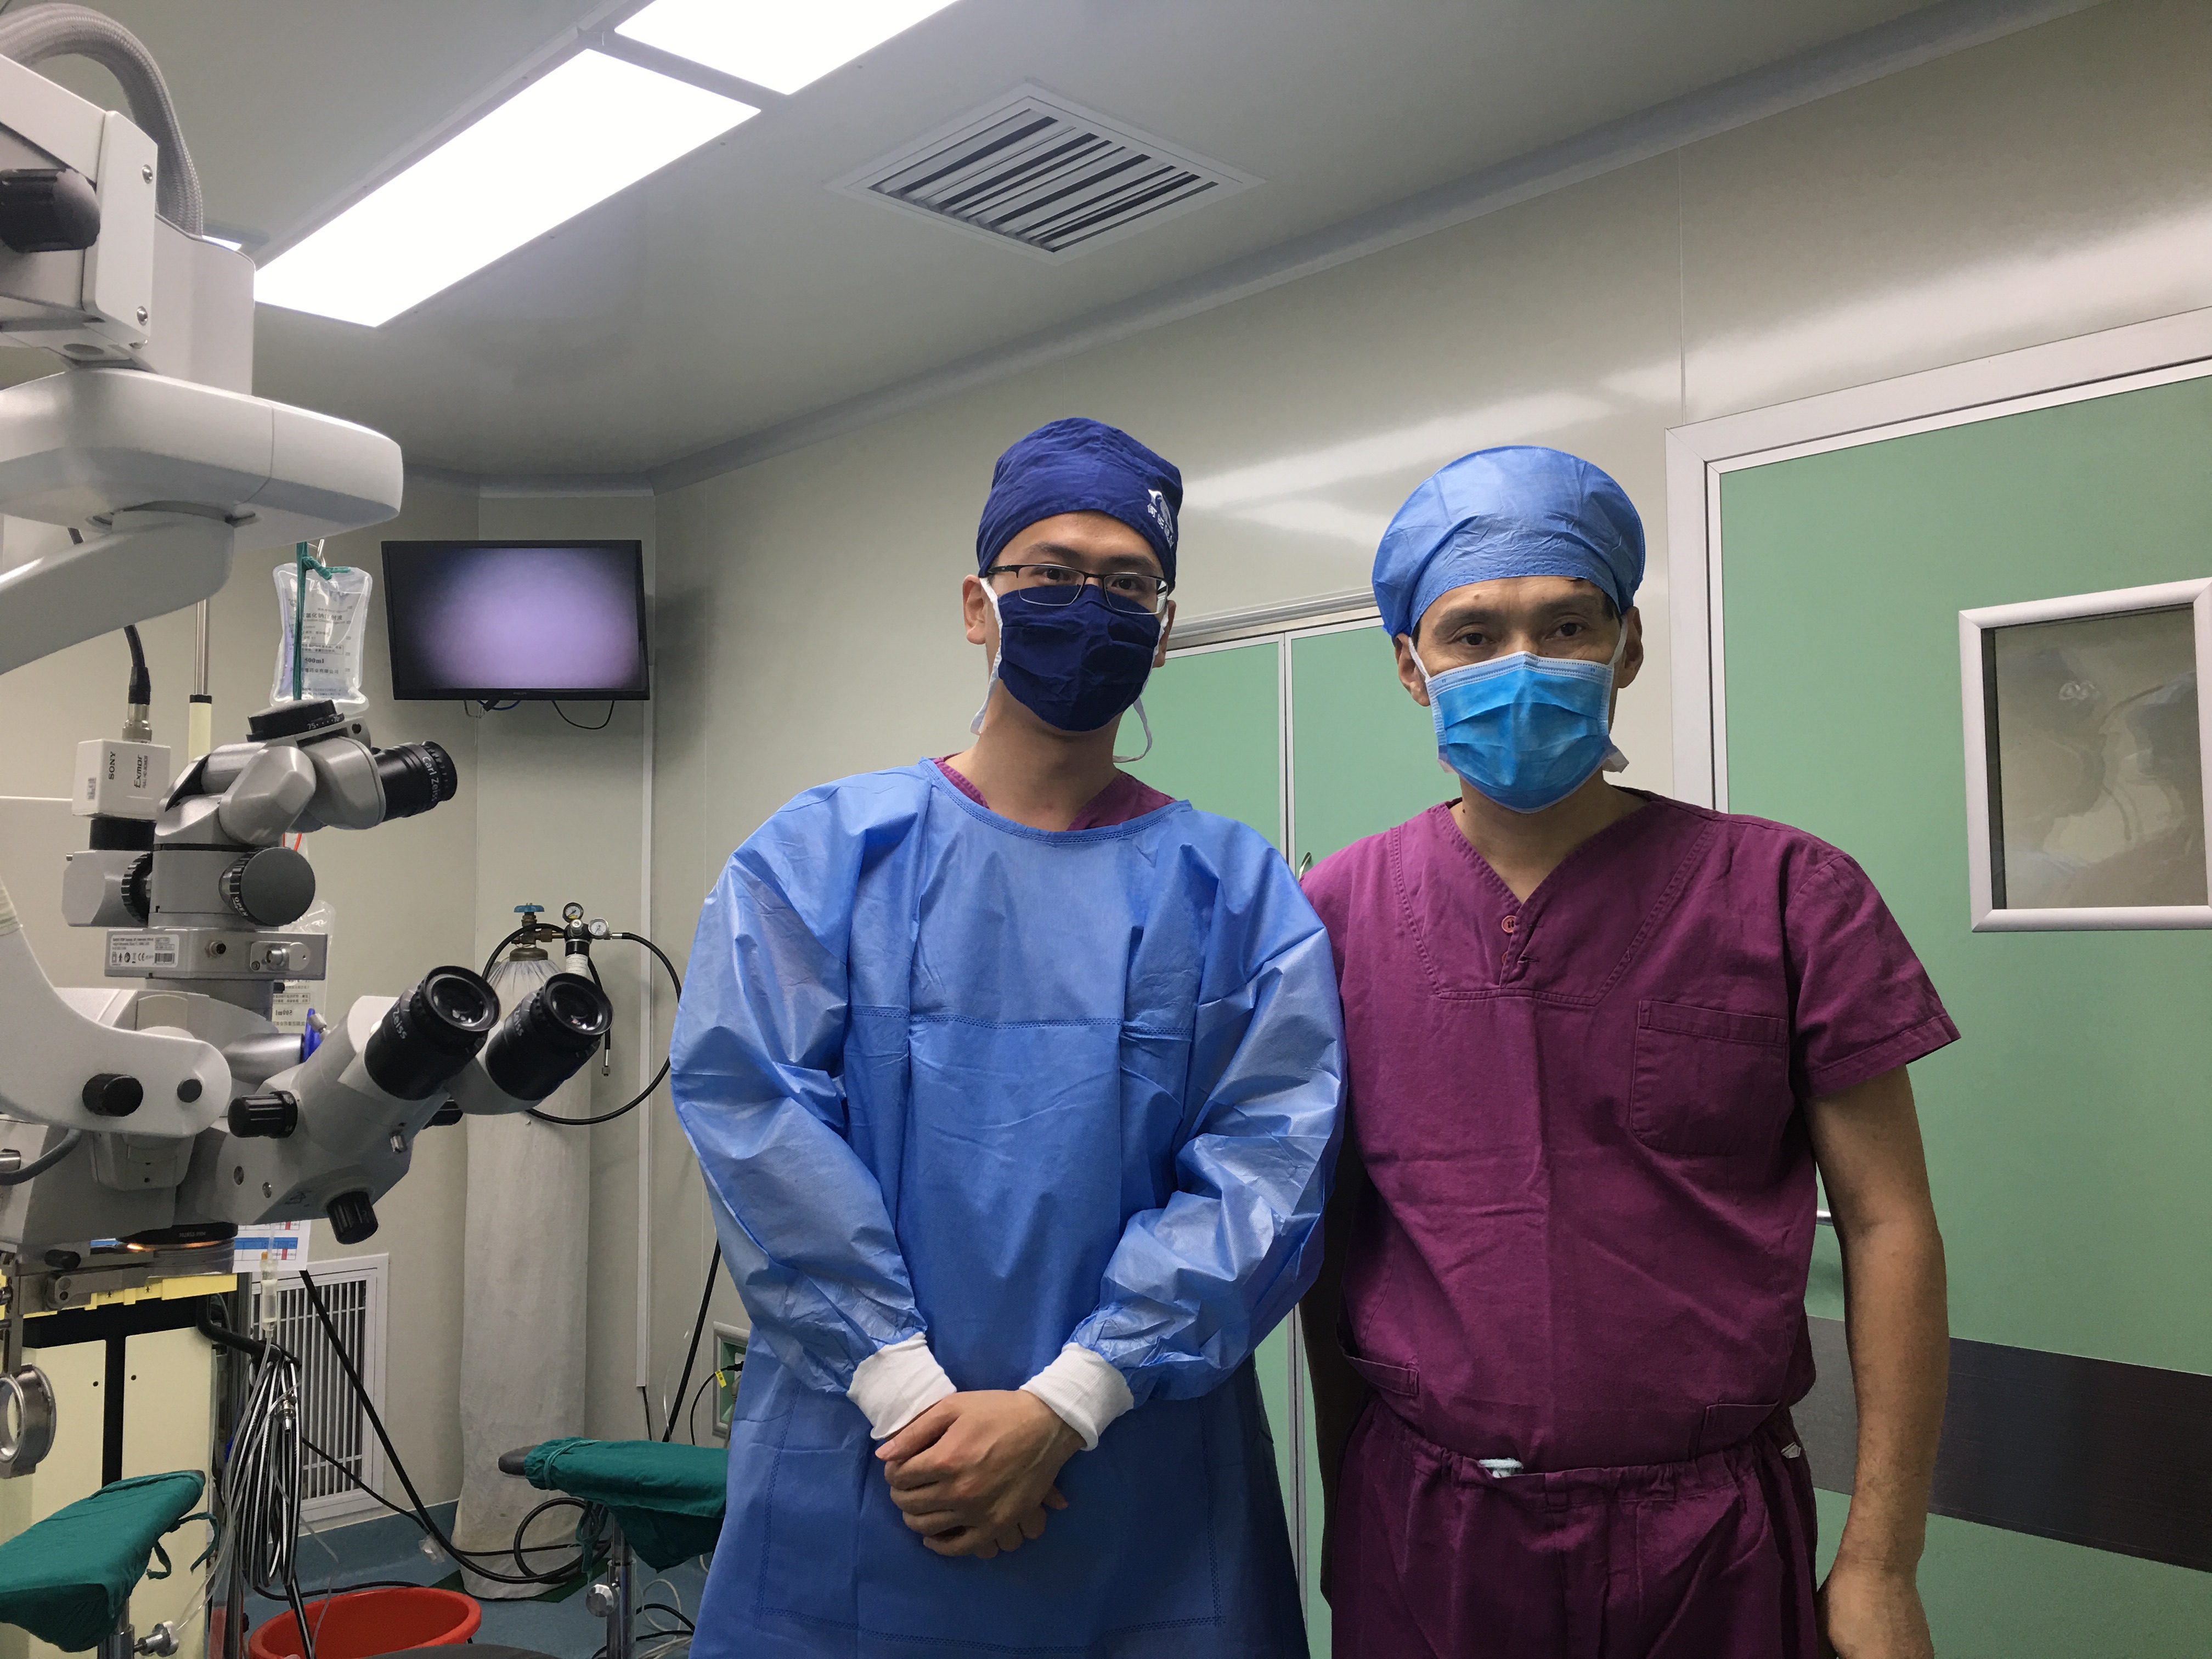 安徽折叠人工玻璃体球囊植入手术在合肥爱尔眼科-科室动态-合肥爱尔眼科医院